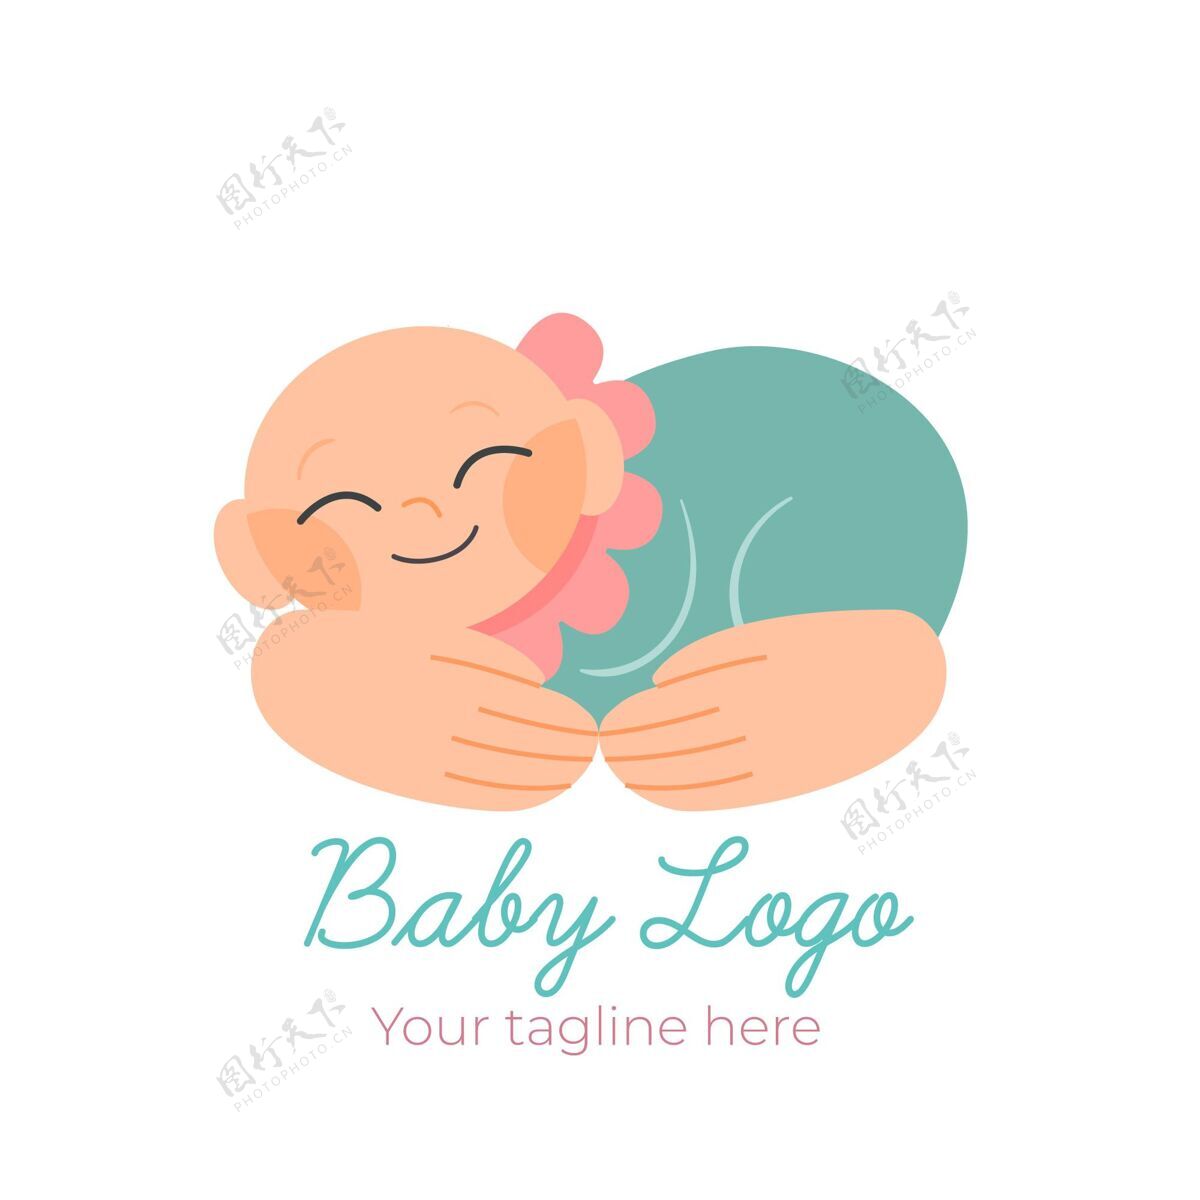 婴儿详细的婴儿标志模板企业商标模板公司商标